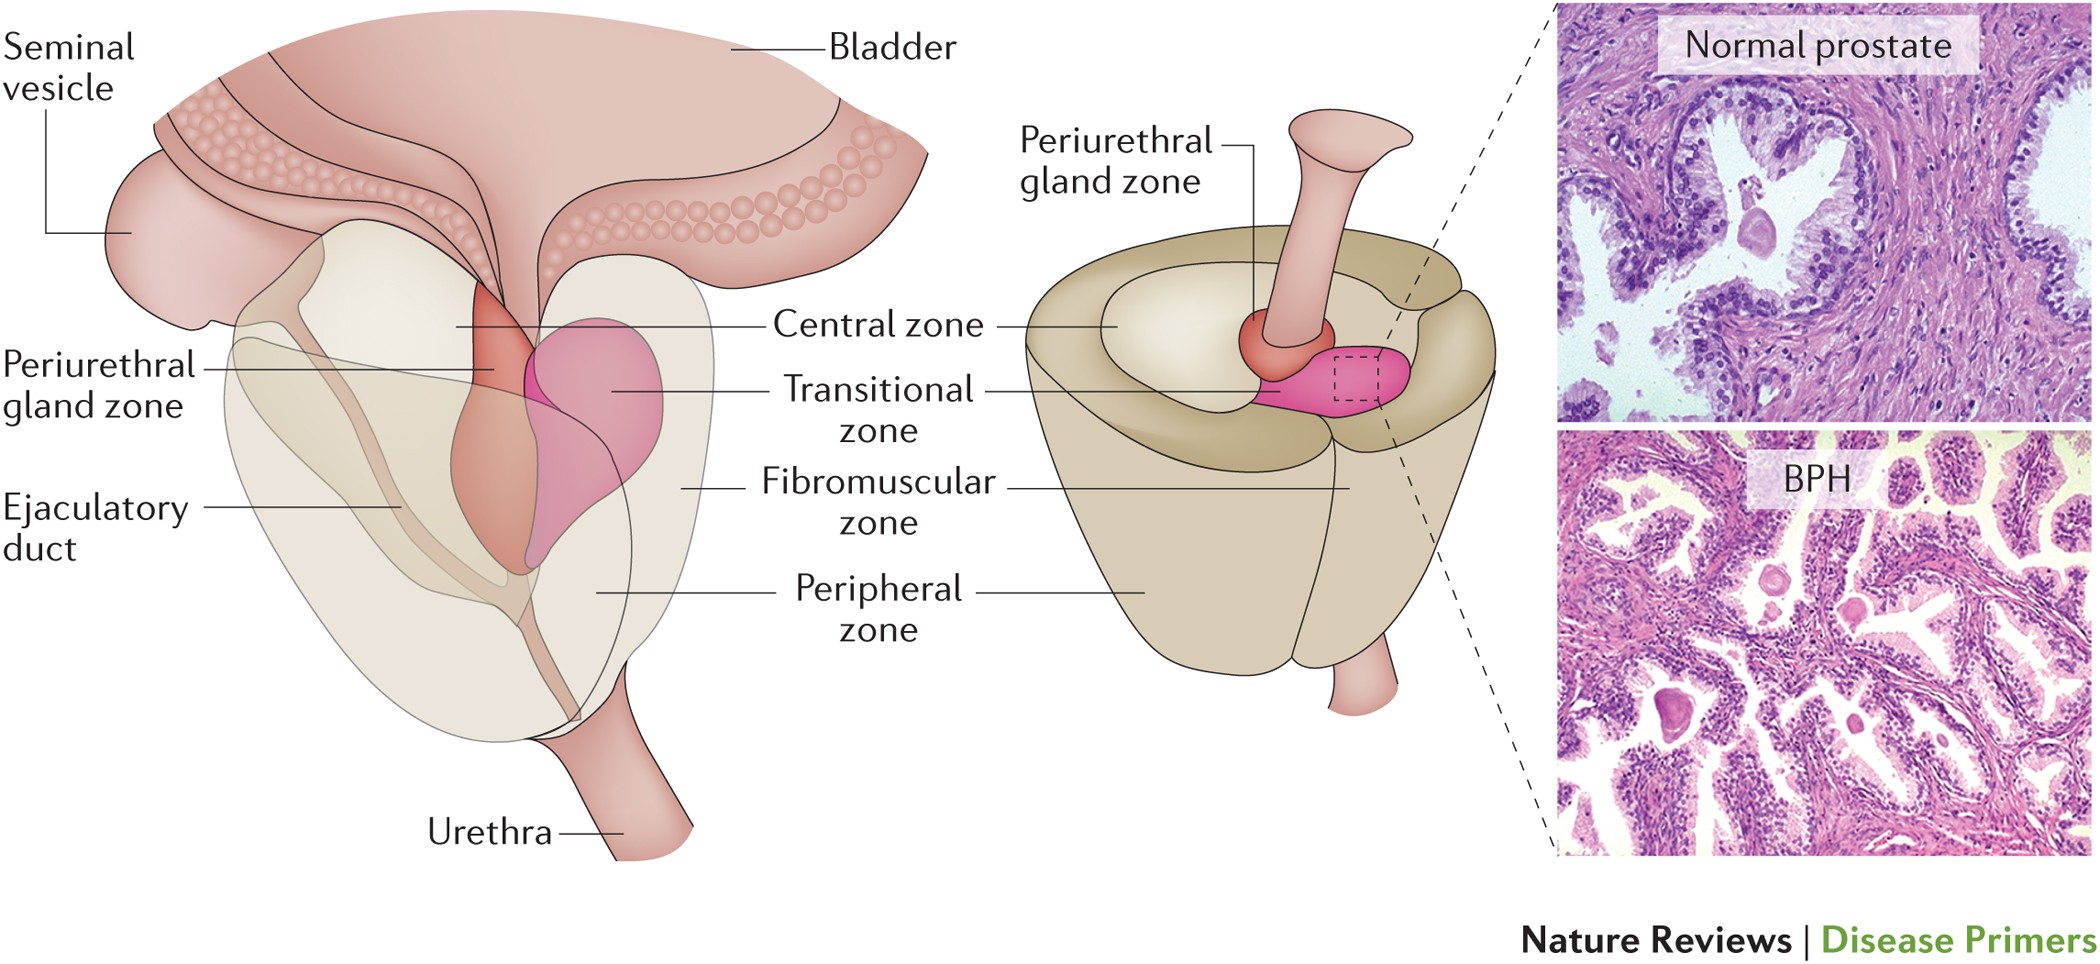 Prostate cancer benign prostatic hyperplasia